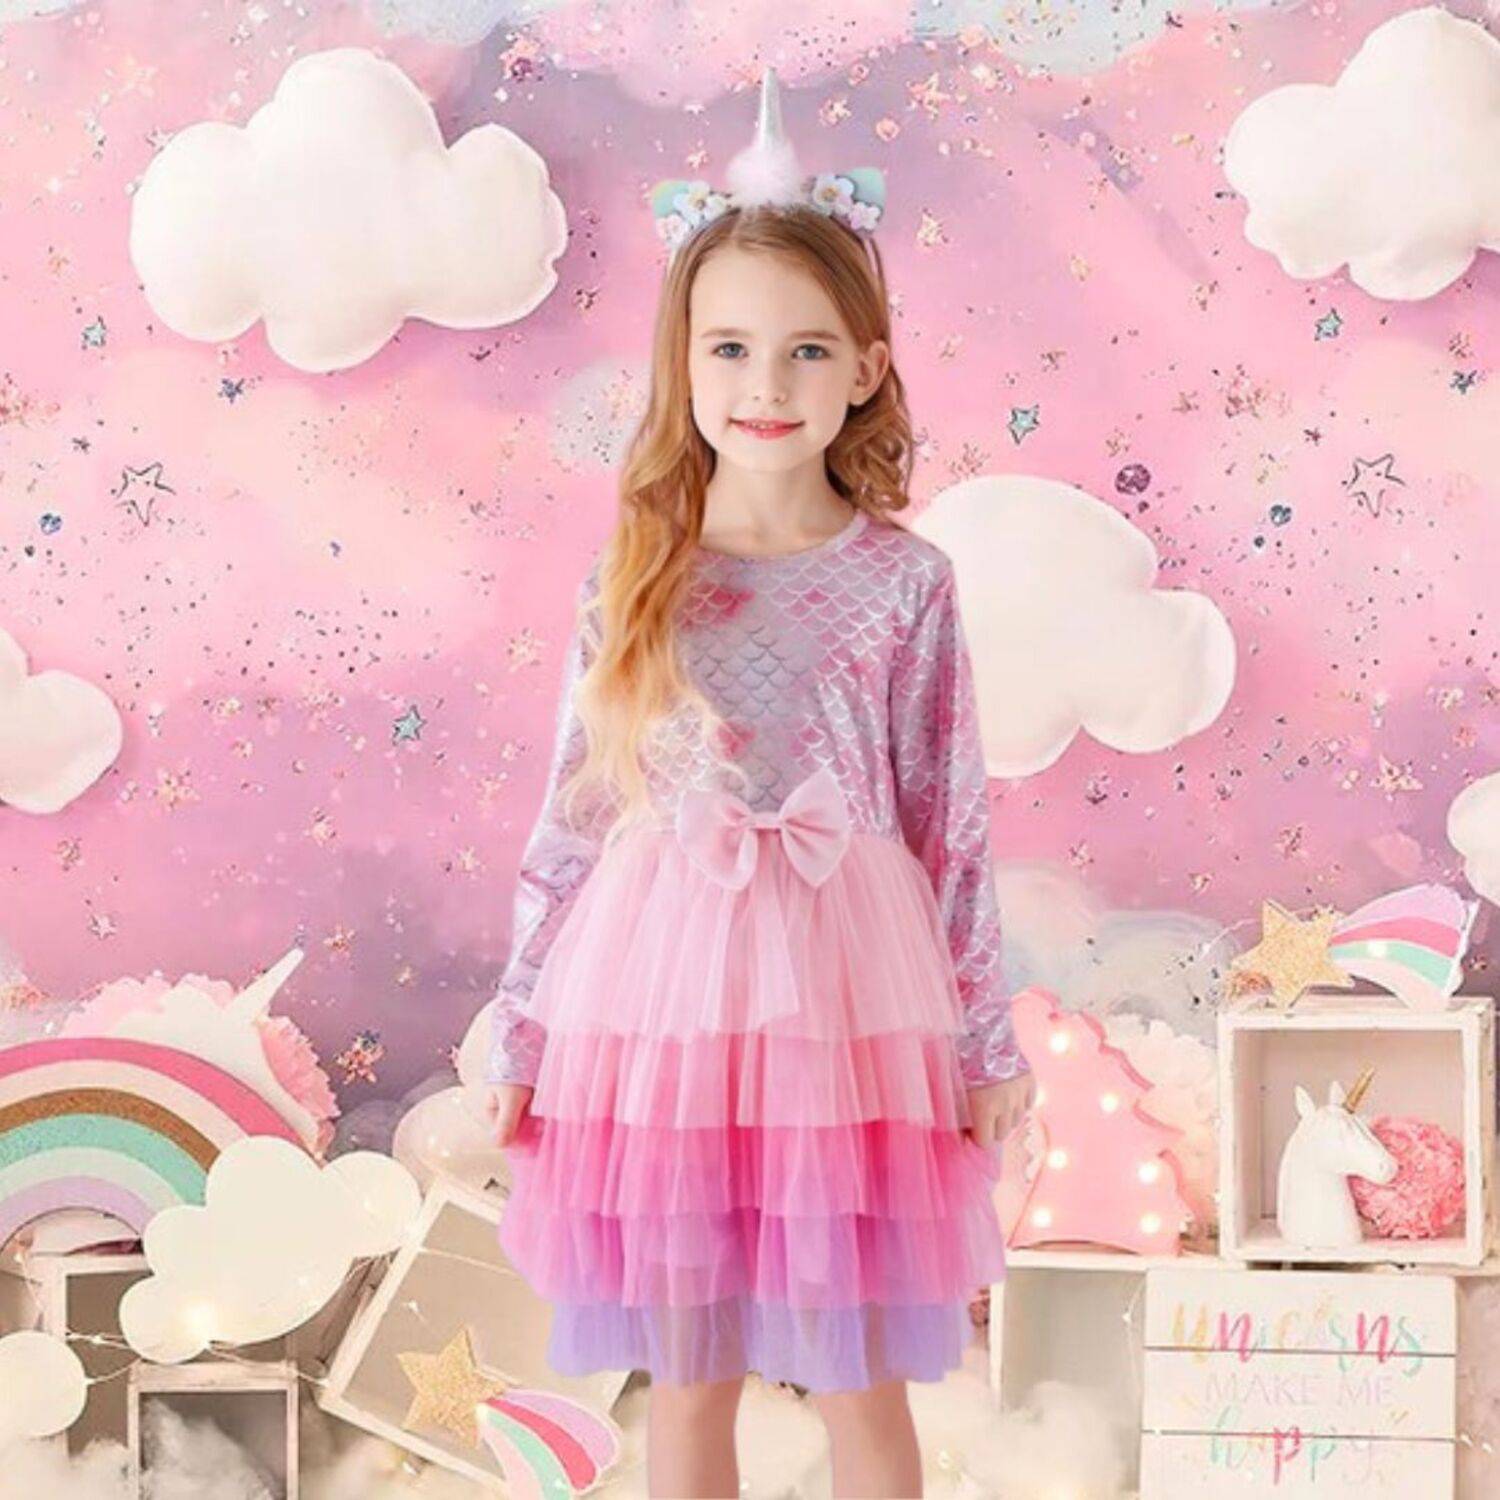 Vestido de Niña de Barbie + Vincha IMPORTADO